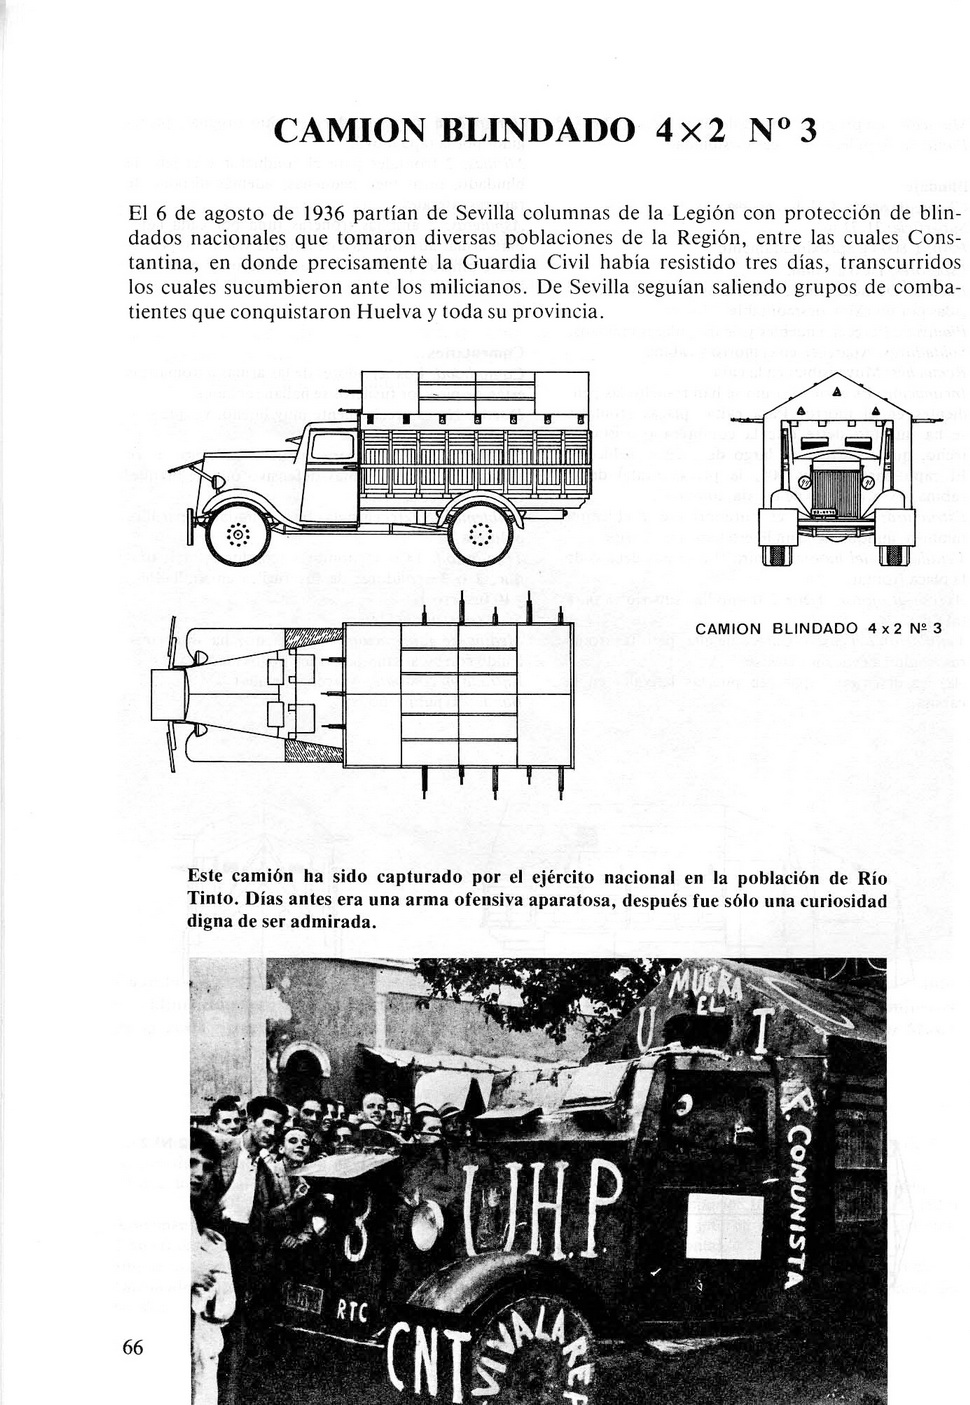 Carros De Combate Y Vehiculos Blindados De La Guerra 1936 1939 [F.C.Albert 1980]_Страница_064.jpg